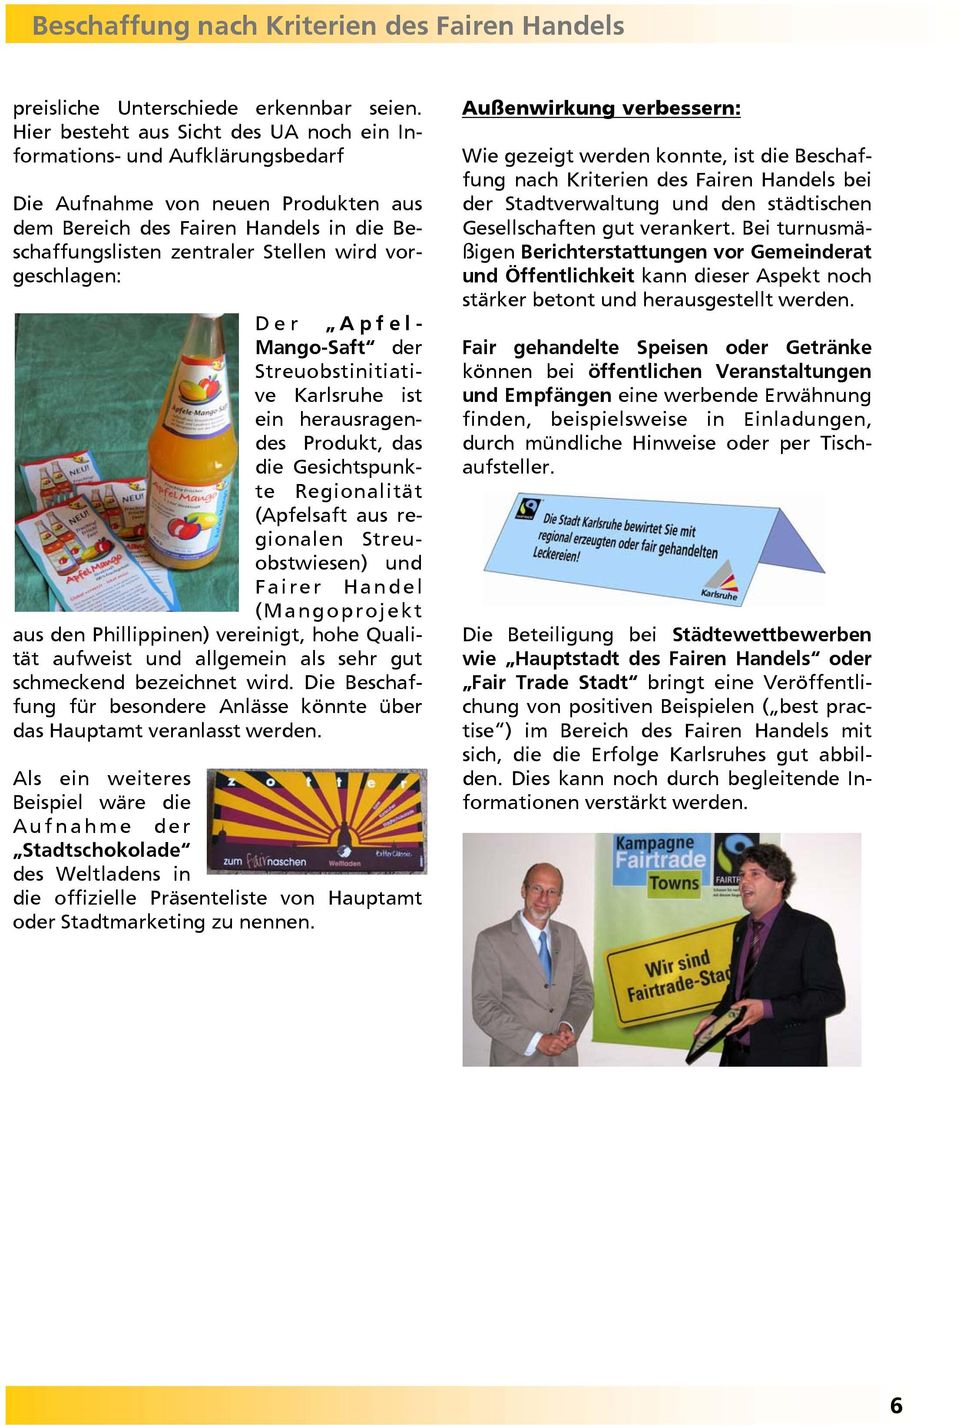 vorgeschlagen: Der Apfel- Mango-Saft der Streuobstinitiative Karlsruhe ist ein herausragendes Produkt, das die Gesichtspunkte Regionalität (Apfelsaft aus regionalen Streuobstwiesen) und Fairer Handel